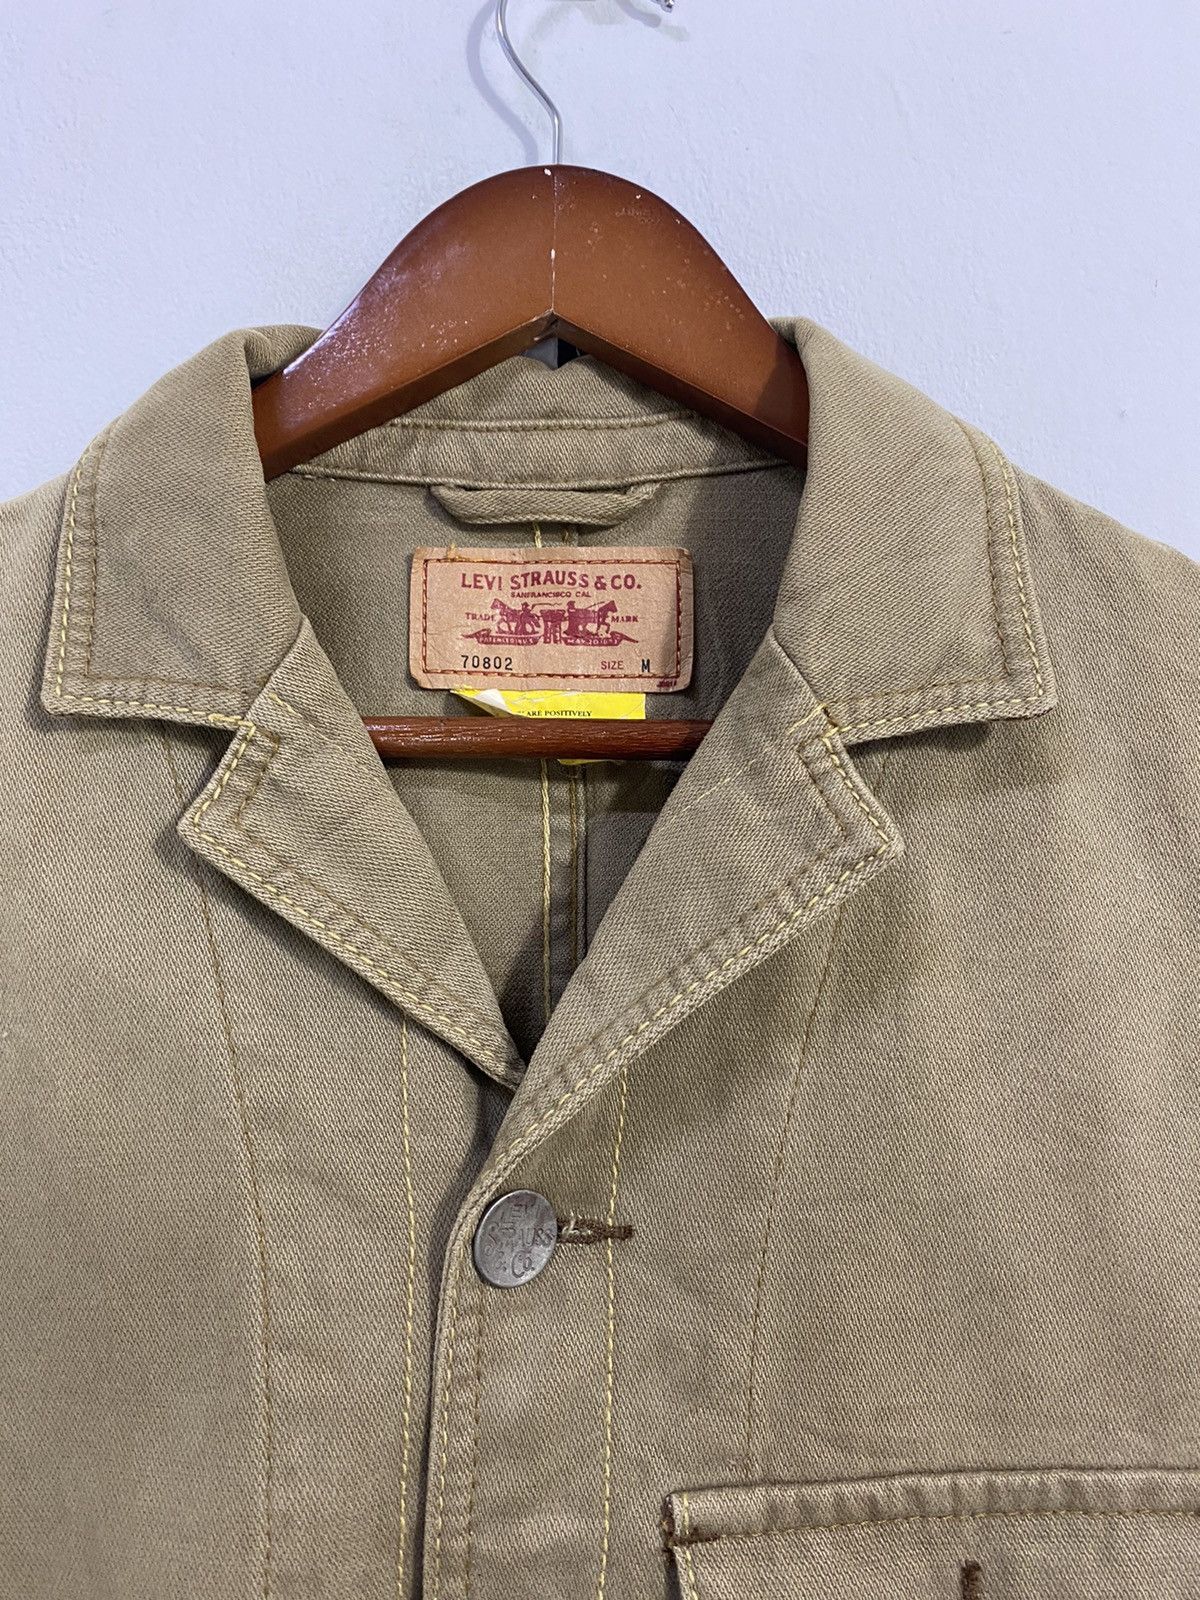 Vintage Levi’s Chore Jacket Design 3 Pocket Nice Design - 4